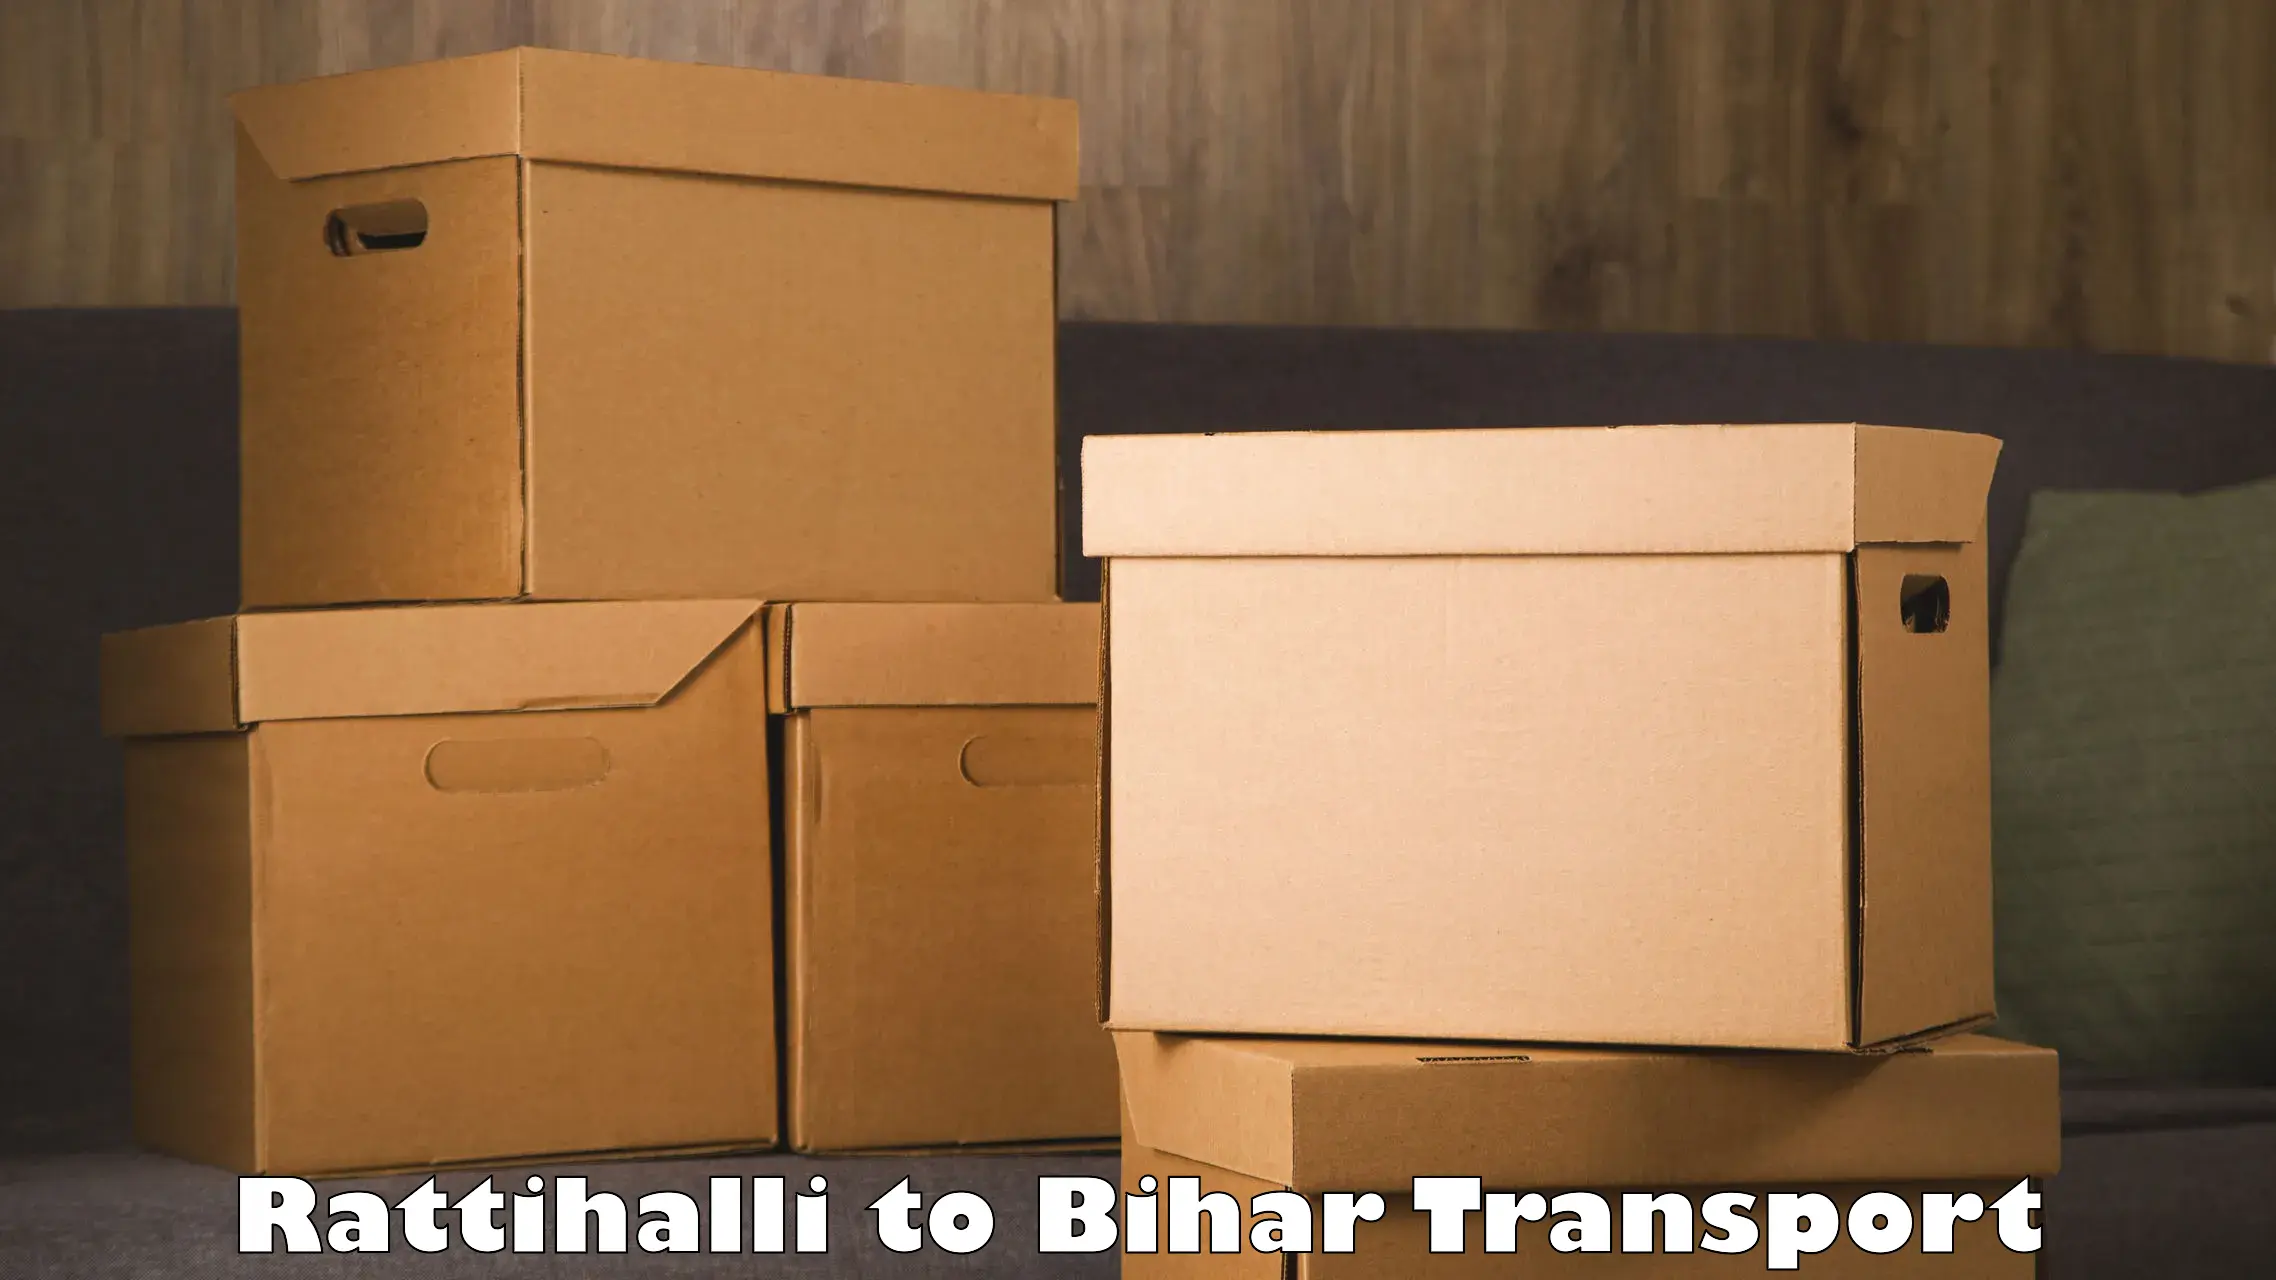 Container transport service Rattihalli to Bakhtiarpur